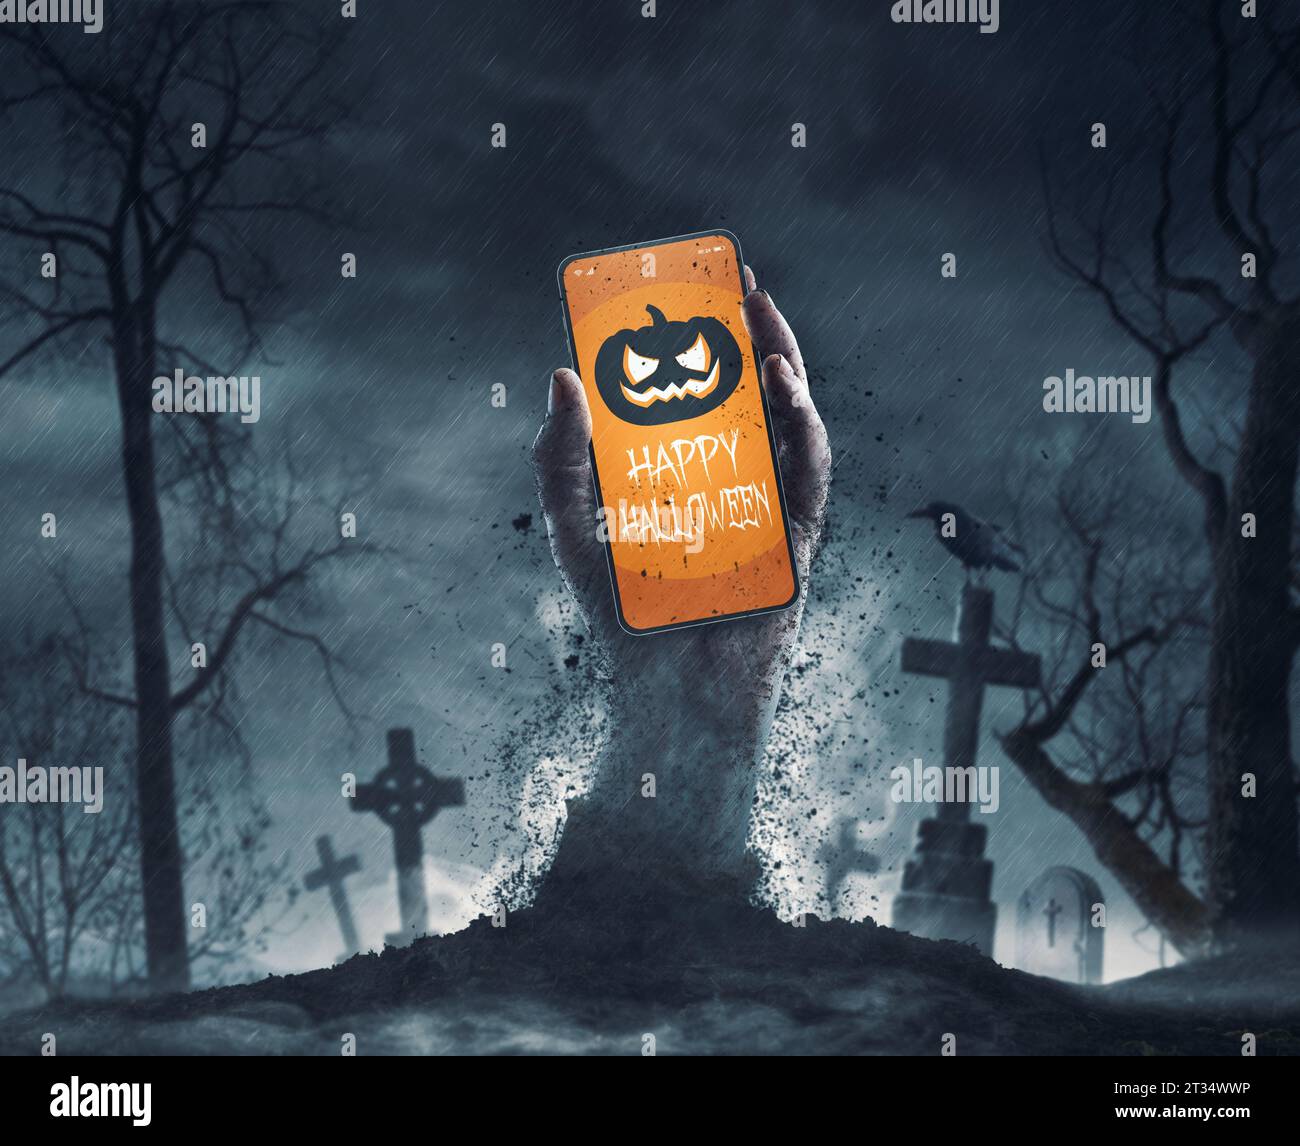 Zombie hält ein Smartphone mit Halloween Wünschen, Feiertagen und Feierlichkeiten Konzept Stockfoto